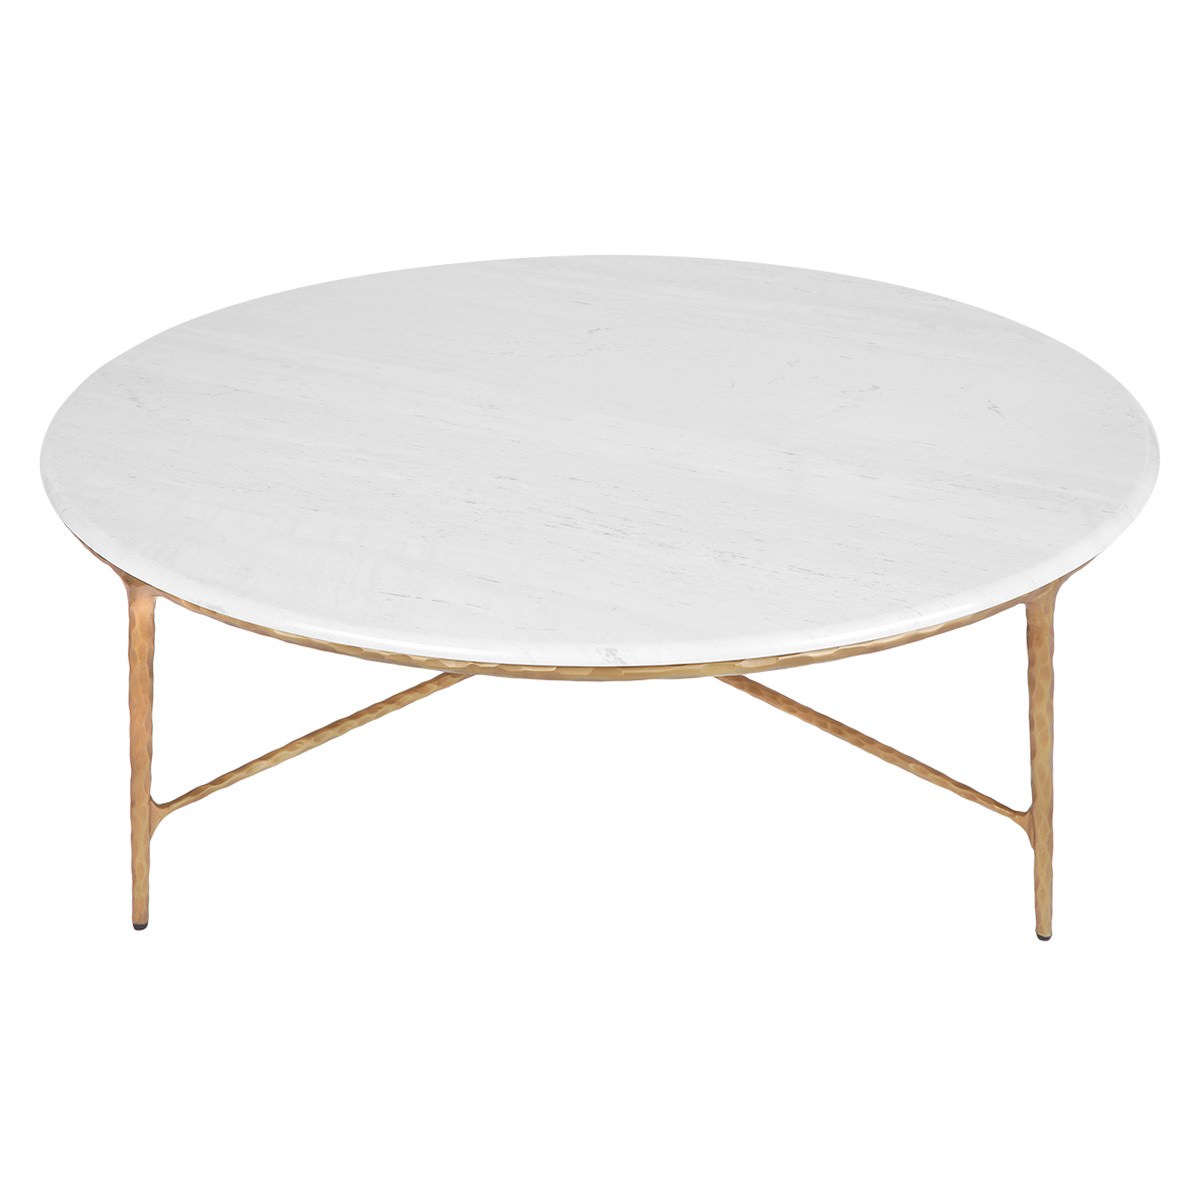 Heston Marble Topped Iron Round Coffee Table, 120cm, White / Brass